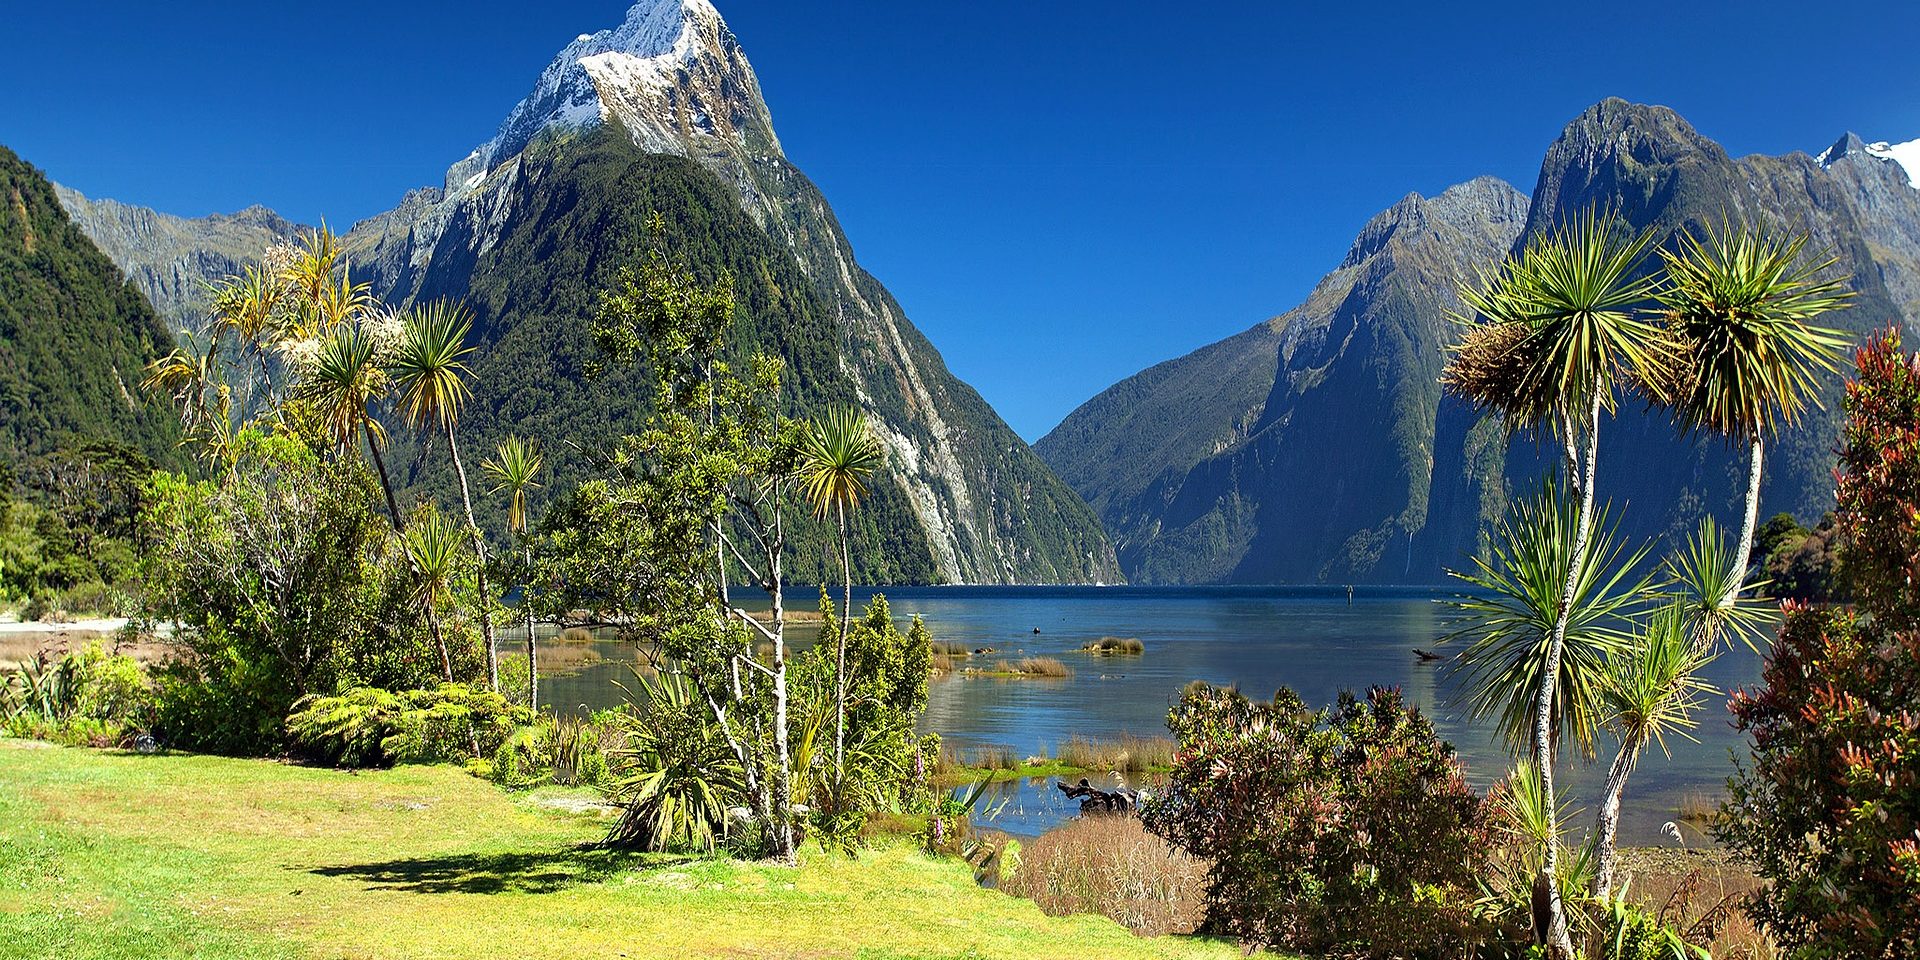 Radreisen & Trekkingreisen am schönsten Ende der Welt - Neuseeland